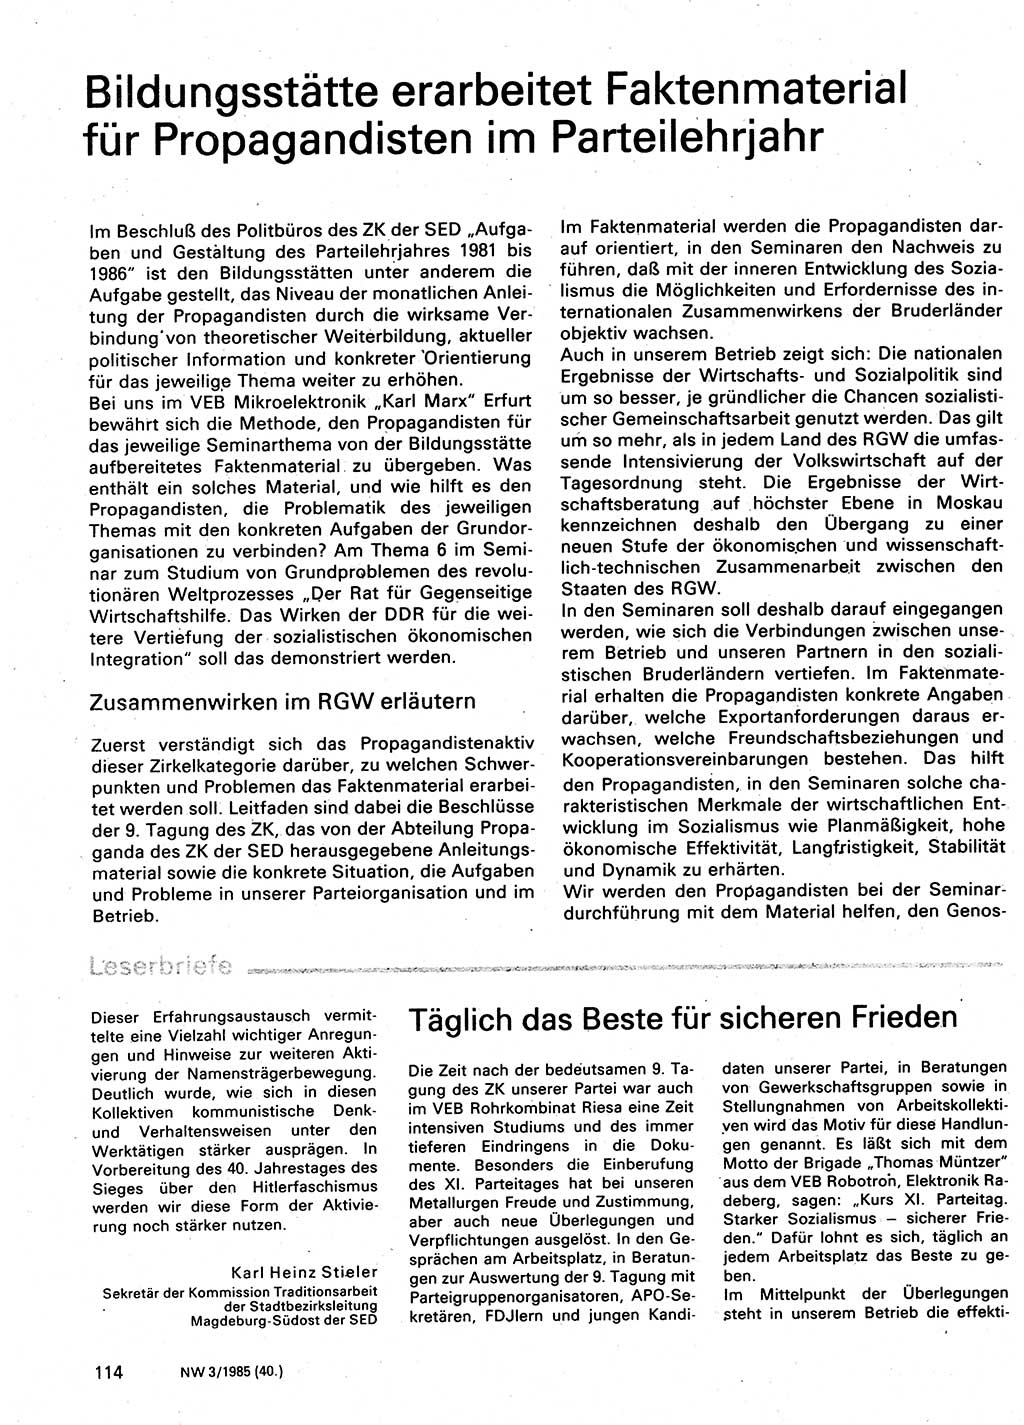 Neuer Weg (NW), Organ des Zentralkomitees (ZK) der SED (Sozialistische Einheitspartei Deutschlands) für Fragen des Parteilebens, 40. Jahrgang [Deutsche Demokratische Republik (DDR)] 1985, Seite 114 (NW ZK SED DDR 1985, S. 114)